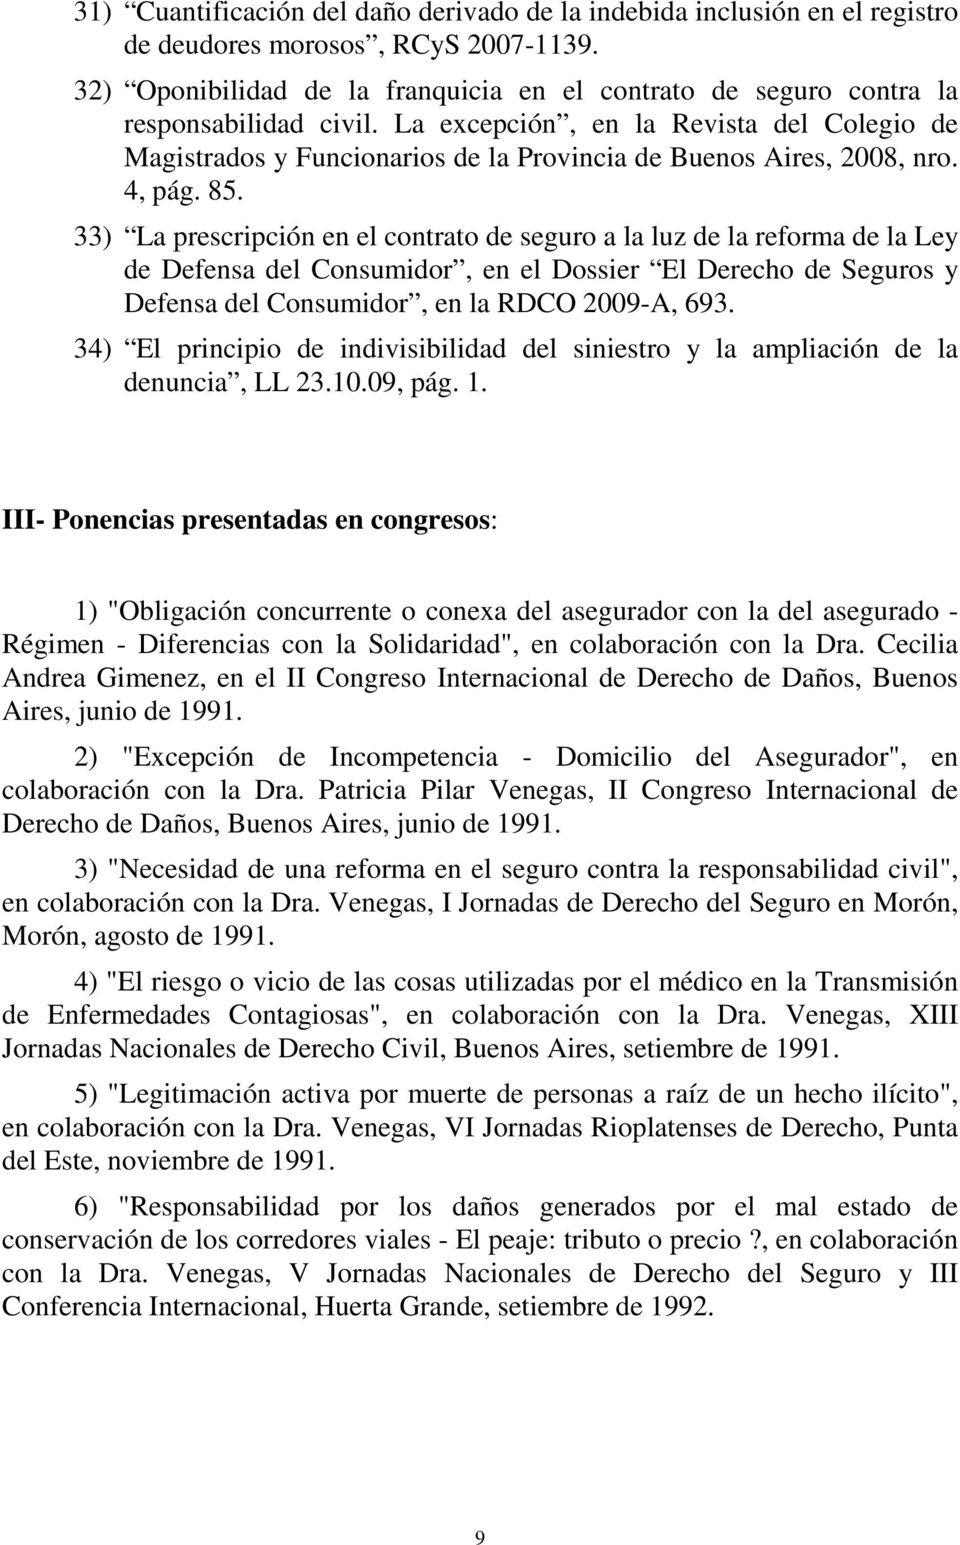 La excepción, en la Revista del Colegio de Magistrados y Funcionarios de la Provincia de Buenos Aires, 2008, nro. 4, pág. 85.